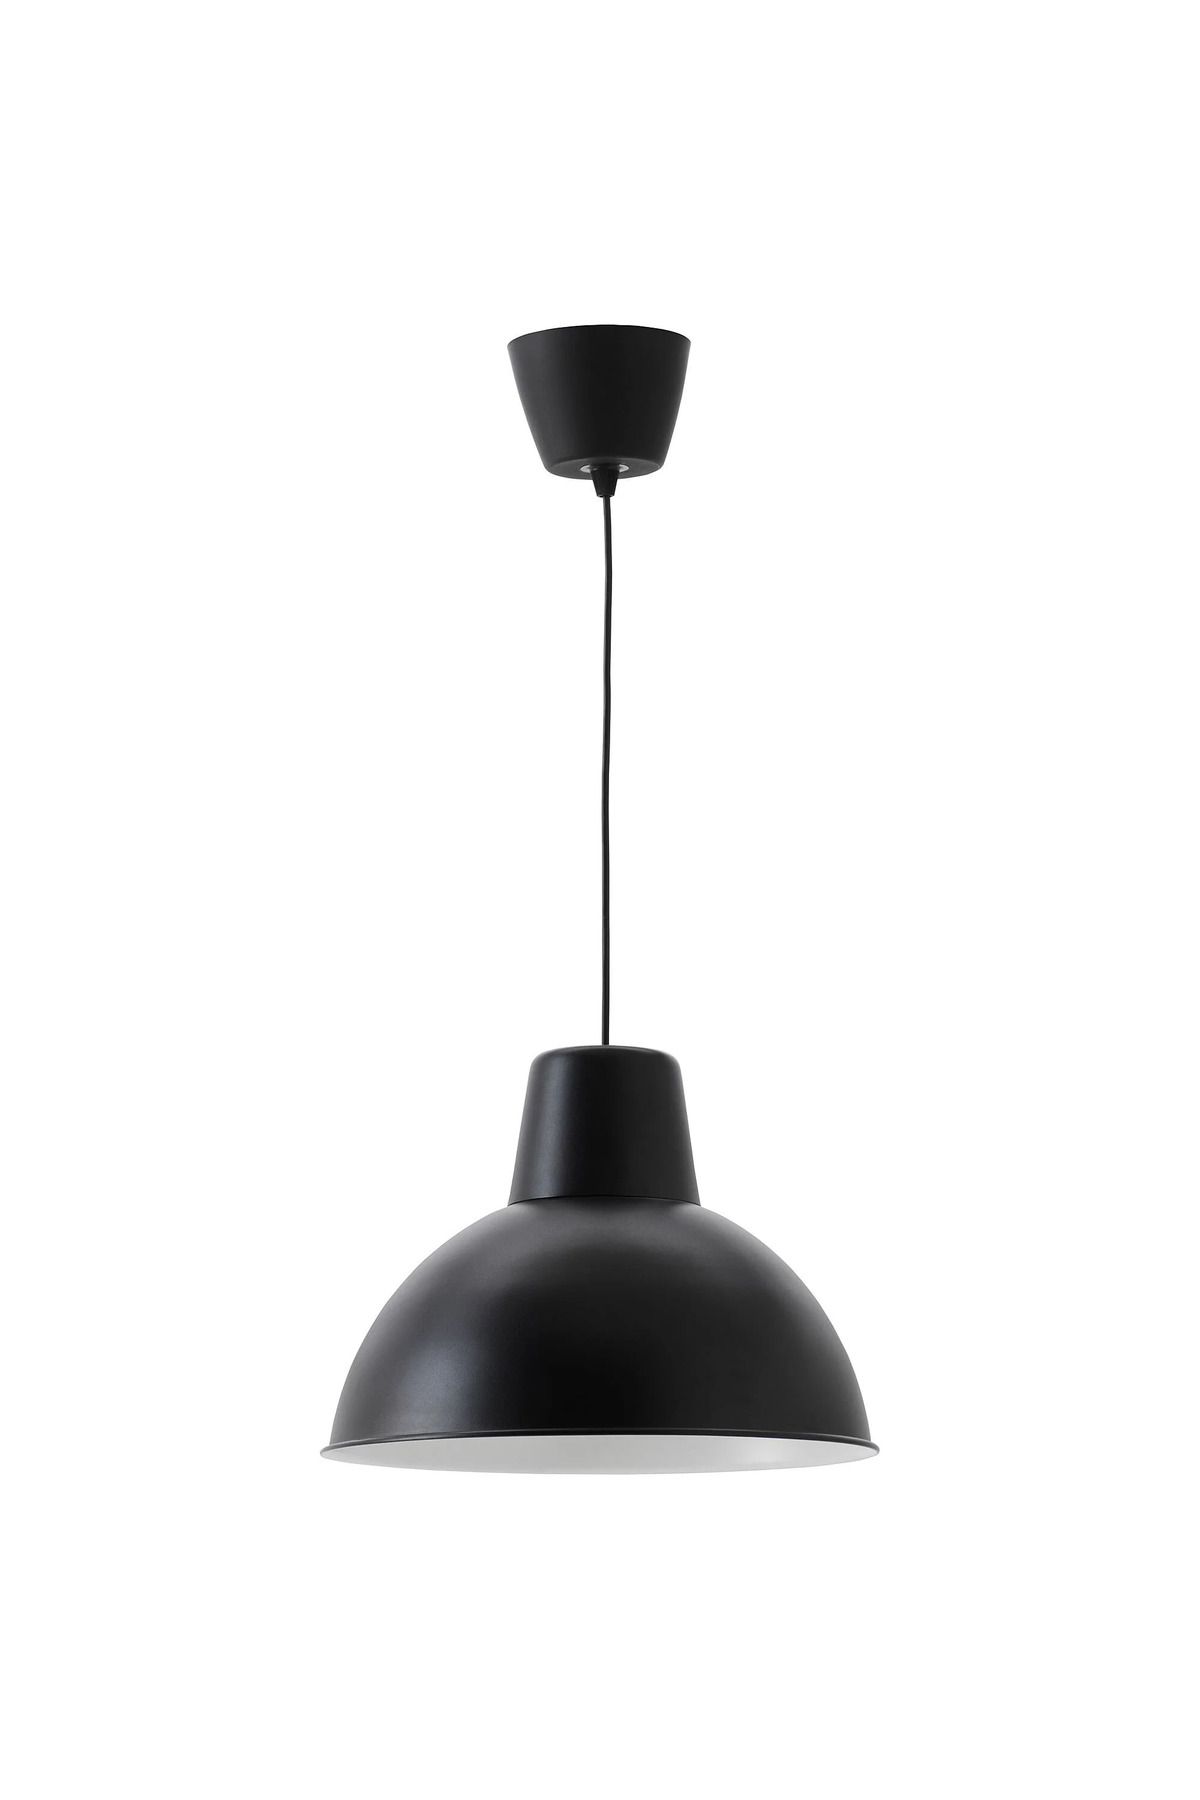 IKEA SKURUP sarkıt lamba, siyah, 38 cm